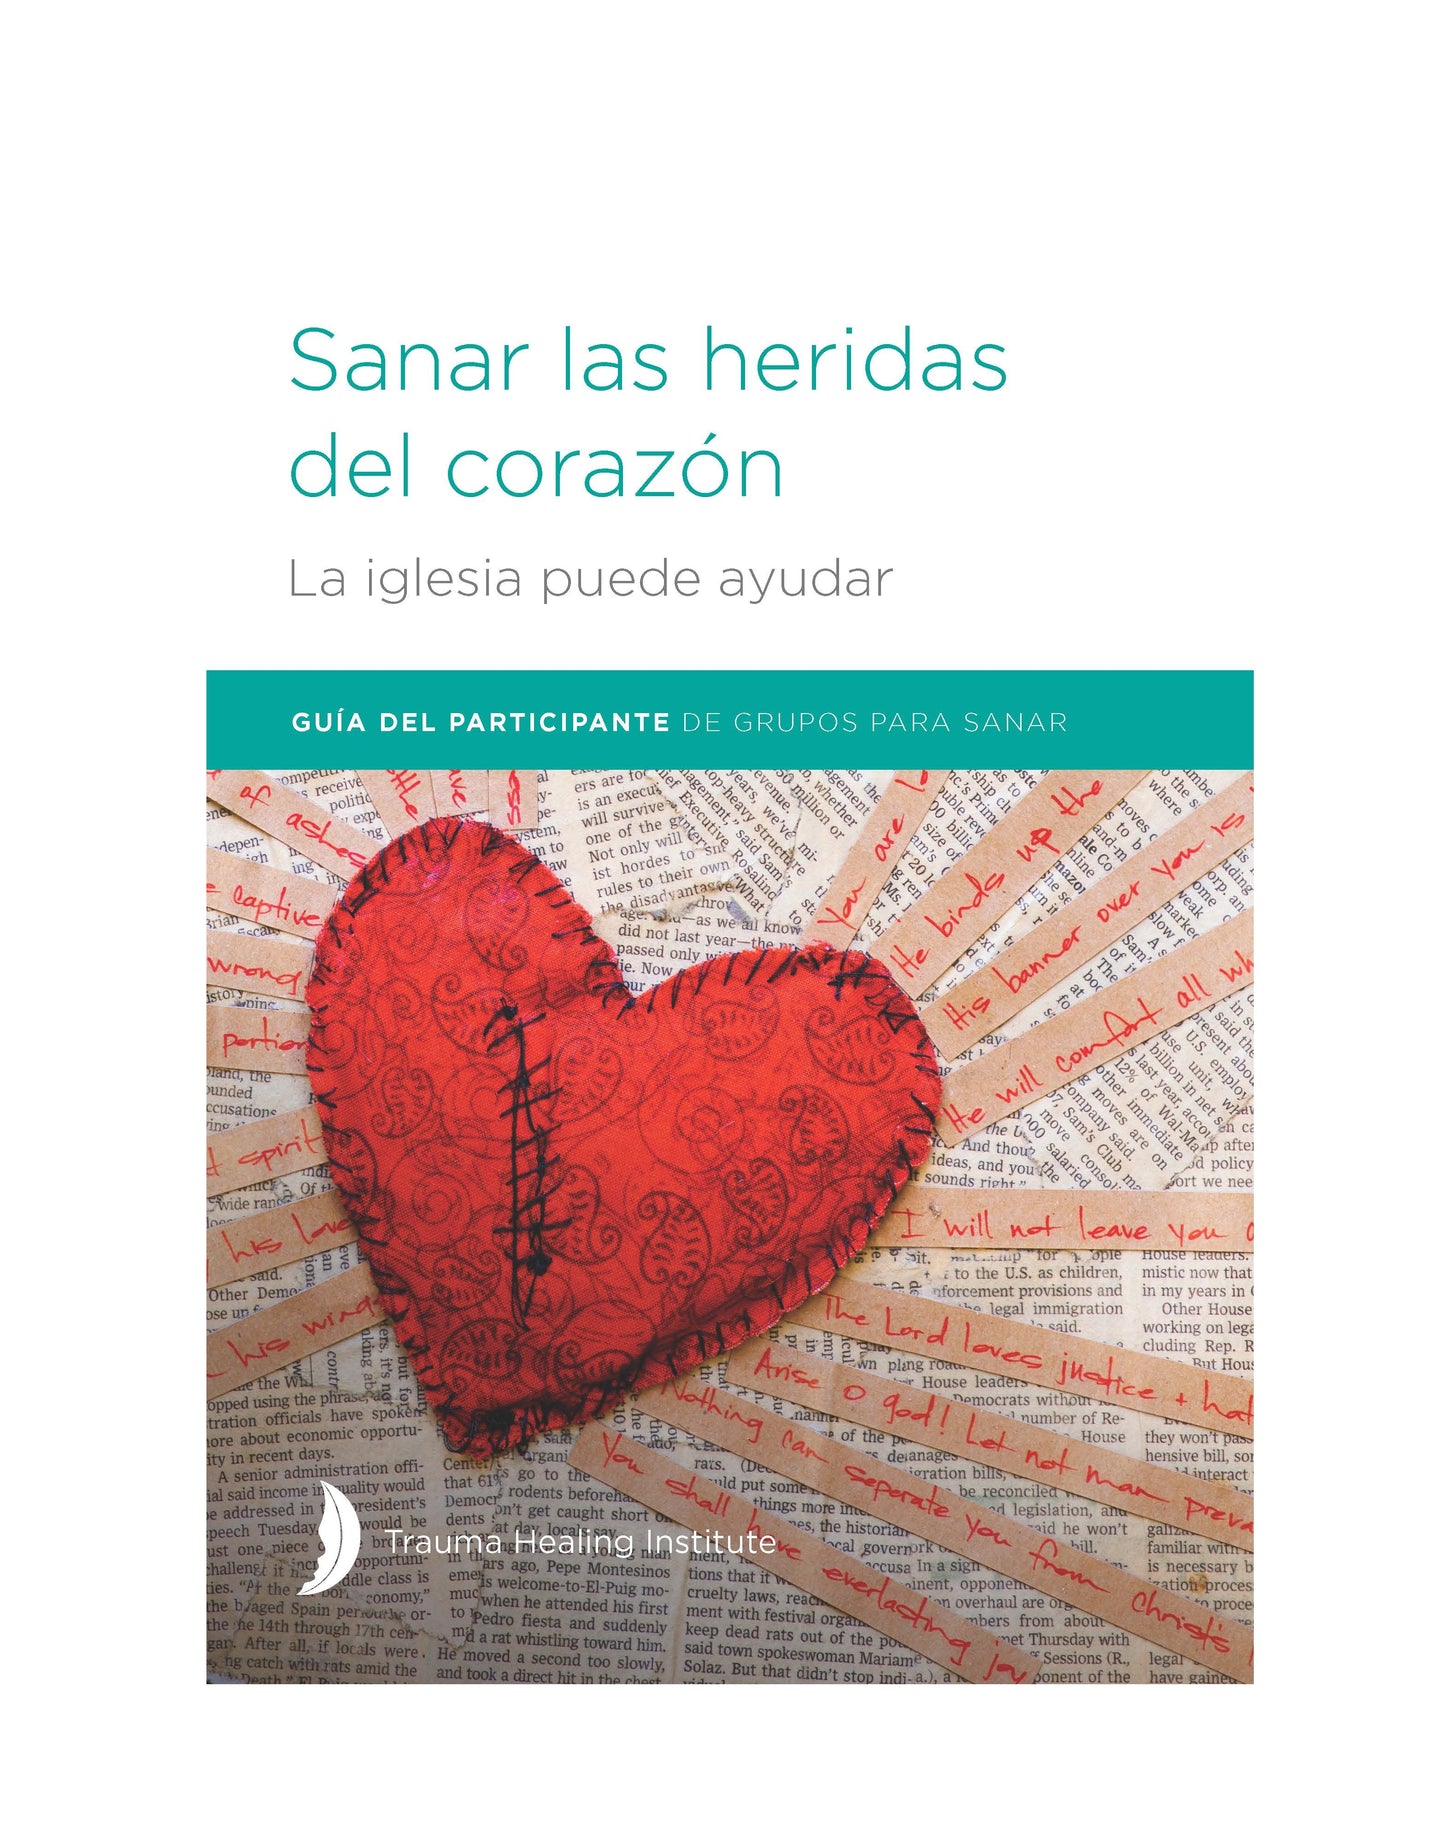 Sanar las heridas del corazón: Guía del participante - Print on Demand